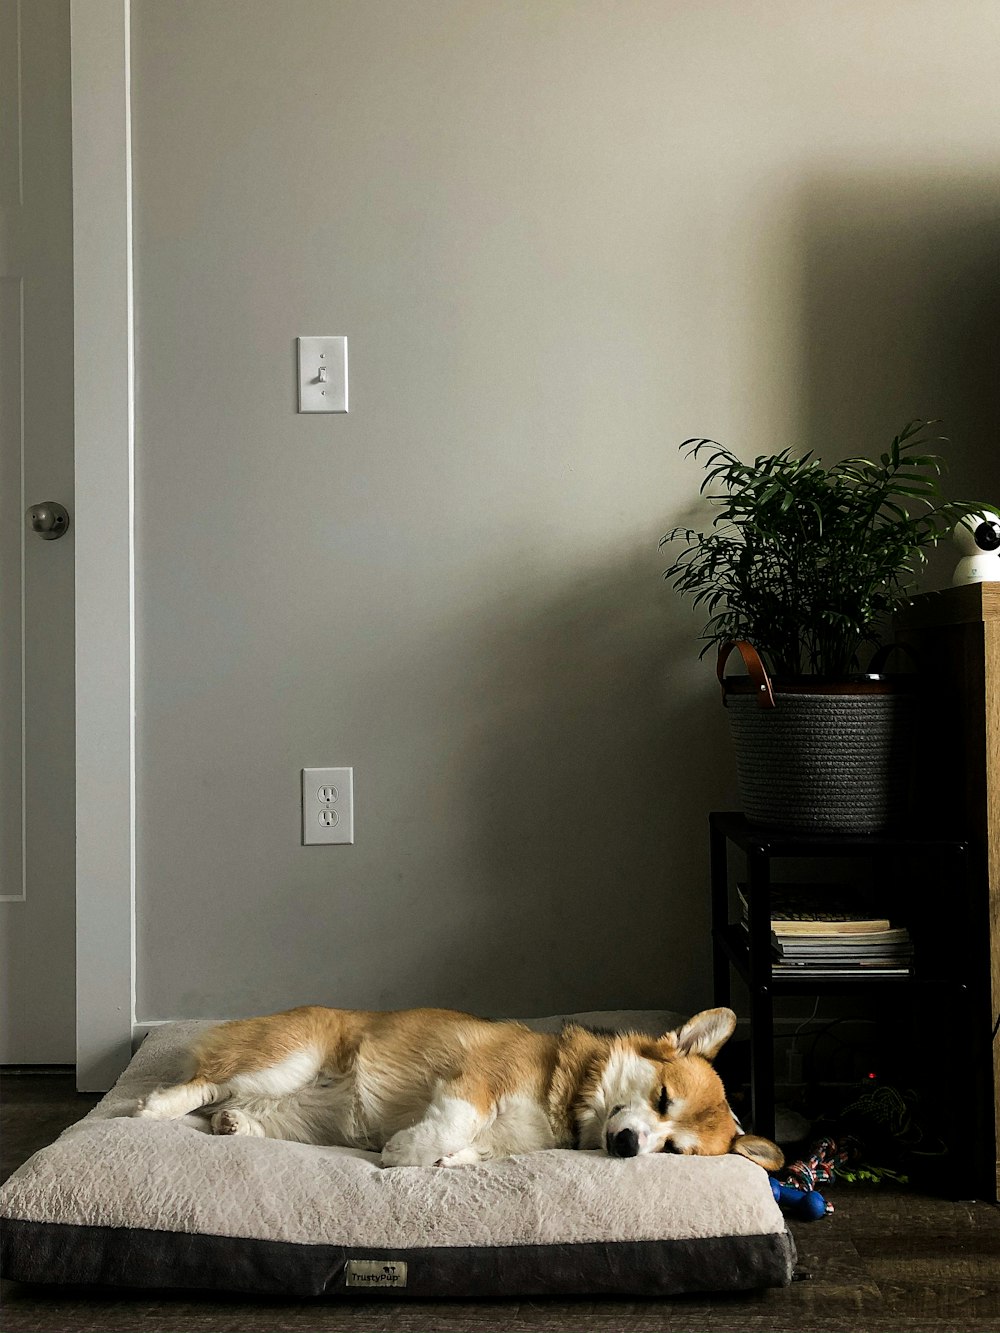 ペットベッドに横たわる白と茶色のショートコートの犬